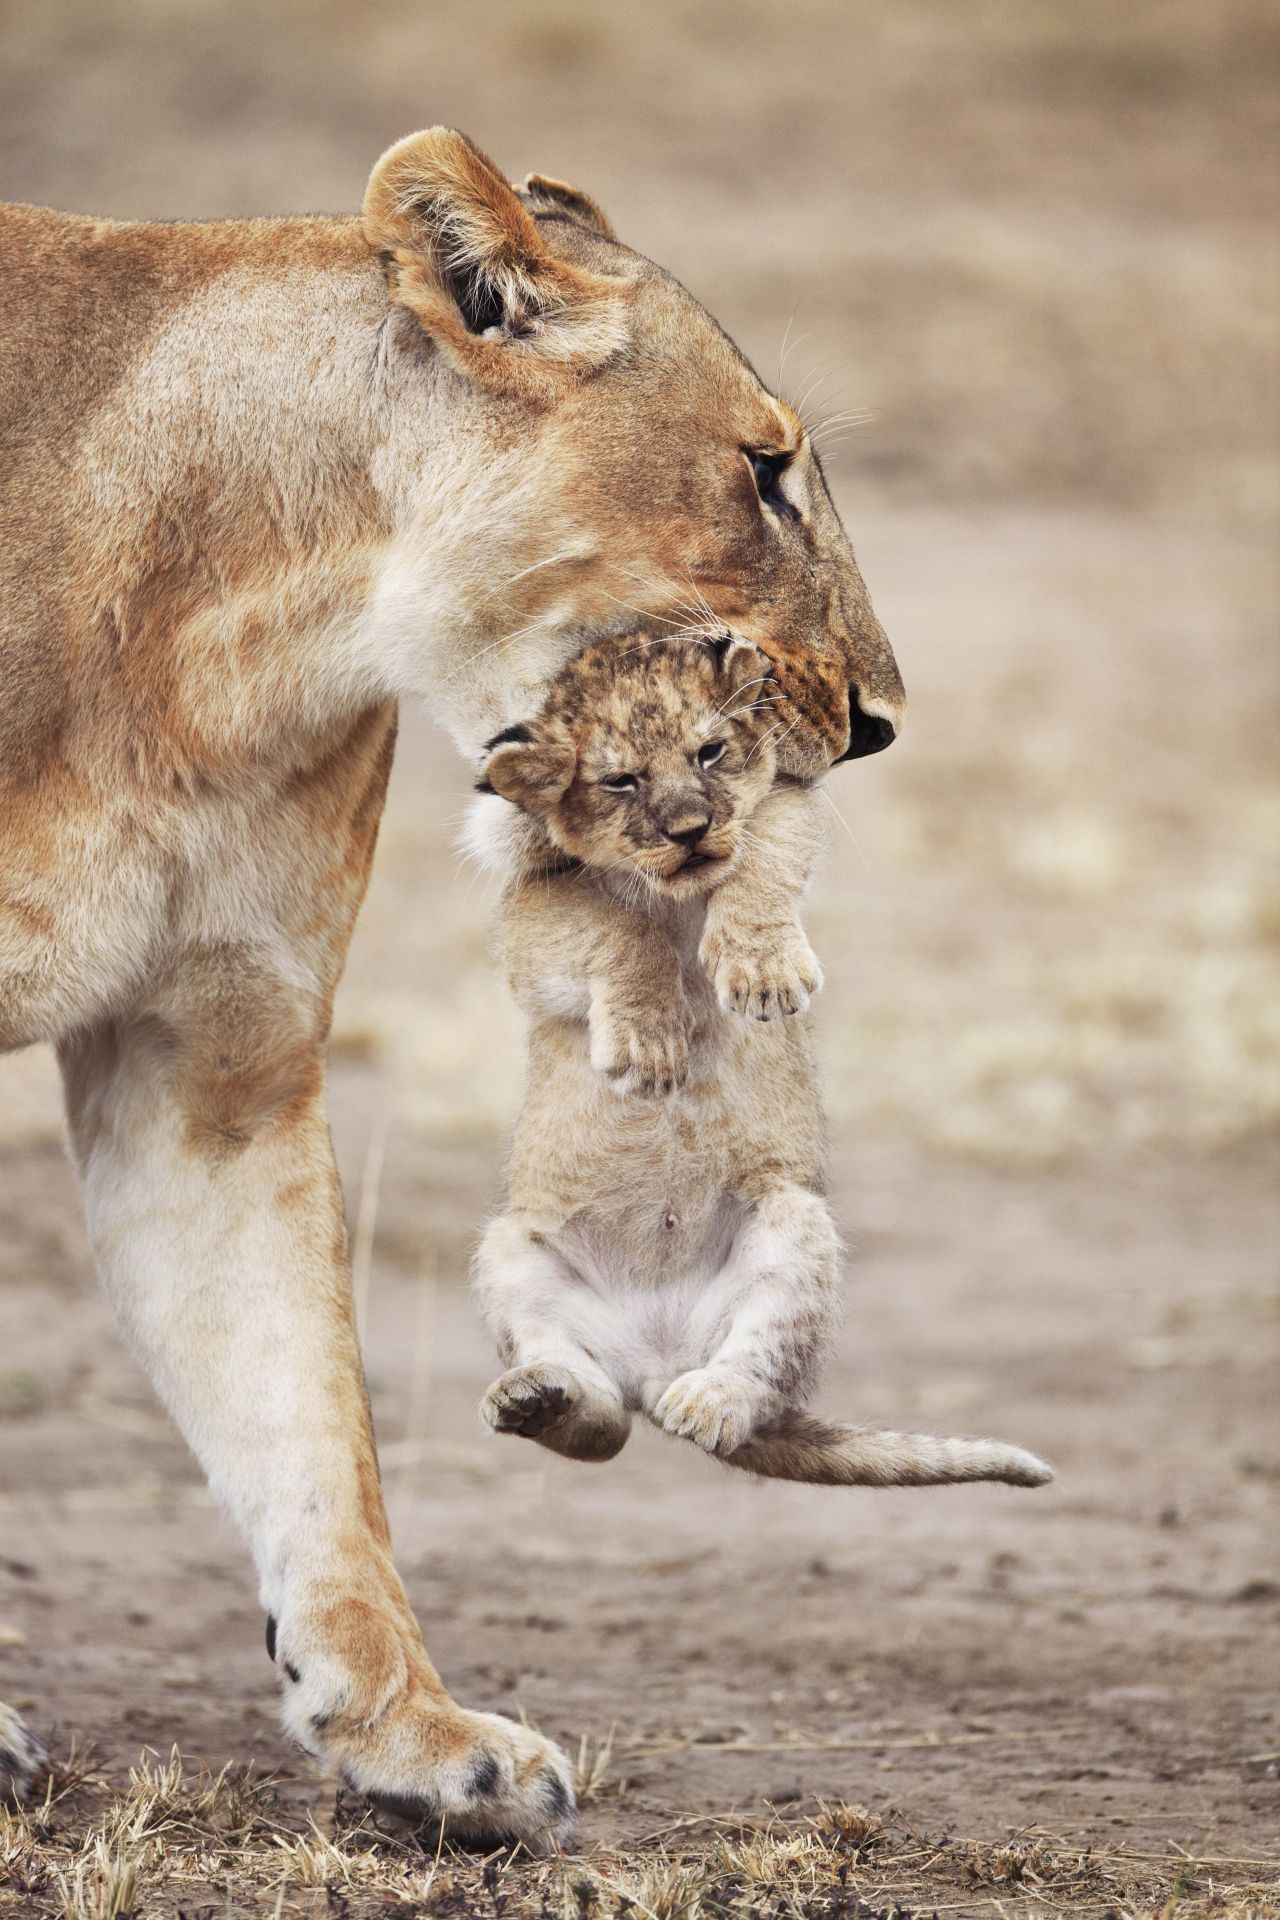 Löwinnen ziehen ständig mit ihren Jungen umher, um sie vor anderen Raubtieren wie Hyänen zu schützen.